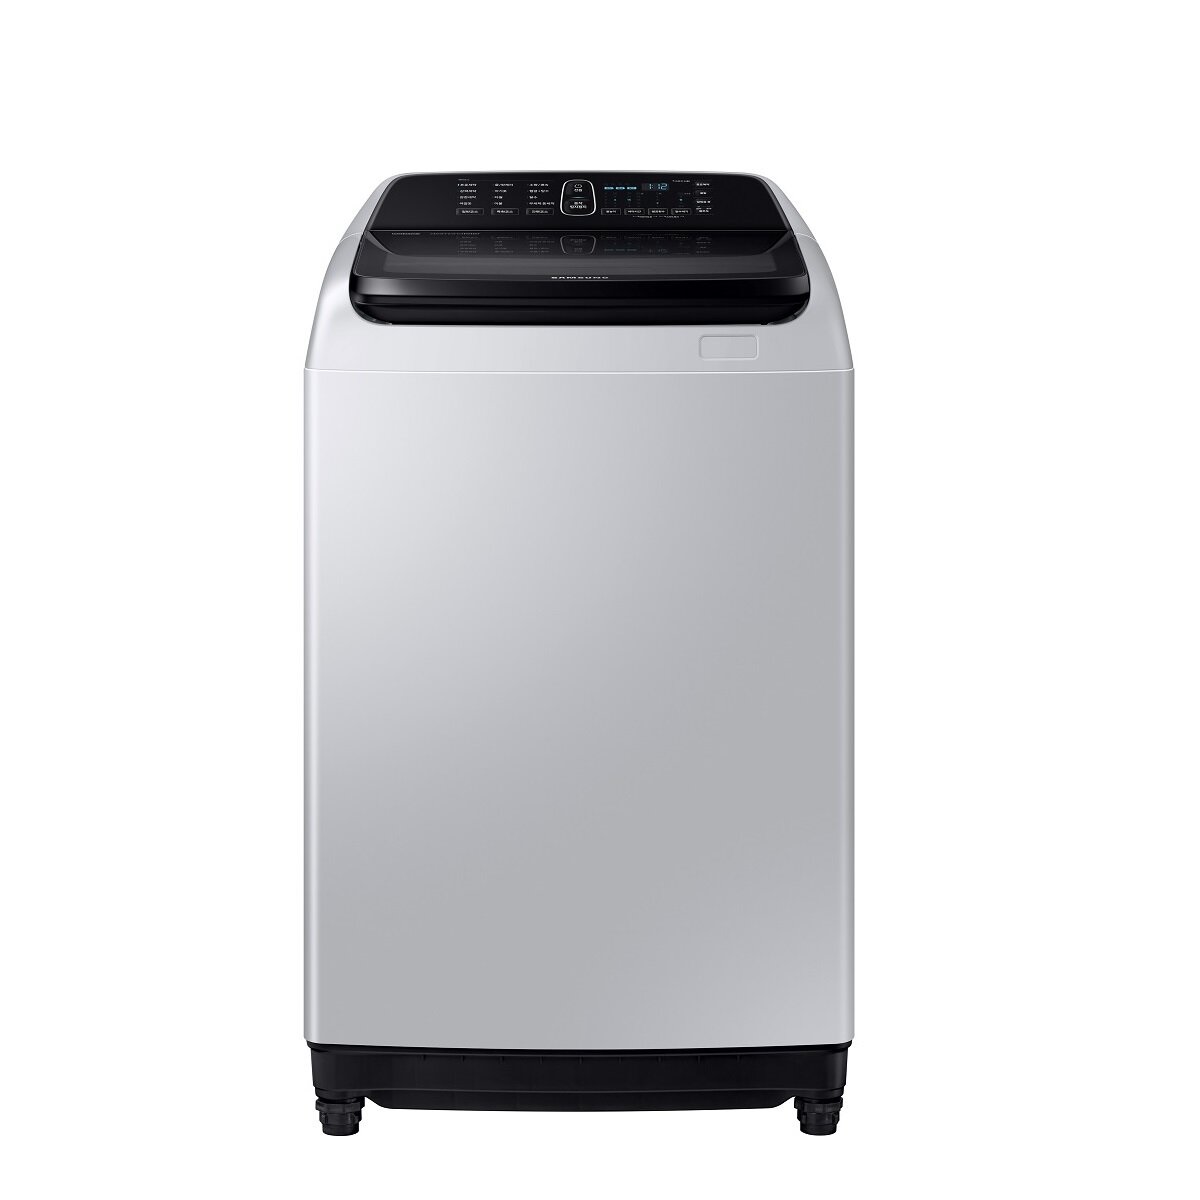 [신세계TV쇼핑]삼성 워블 세탁기 WA14R6360BG (14kg / 노블그레이 / 3등급), 단일상품 